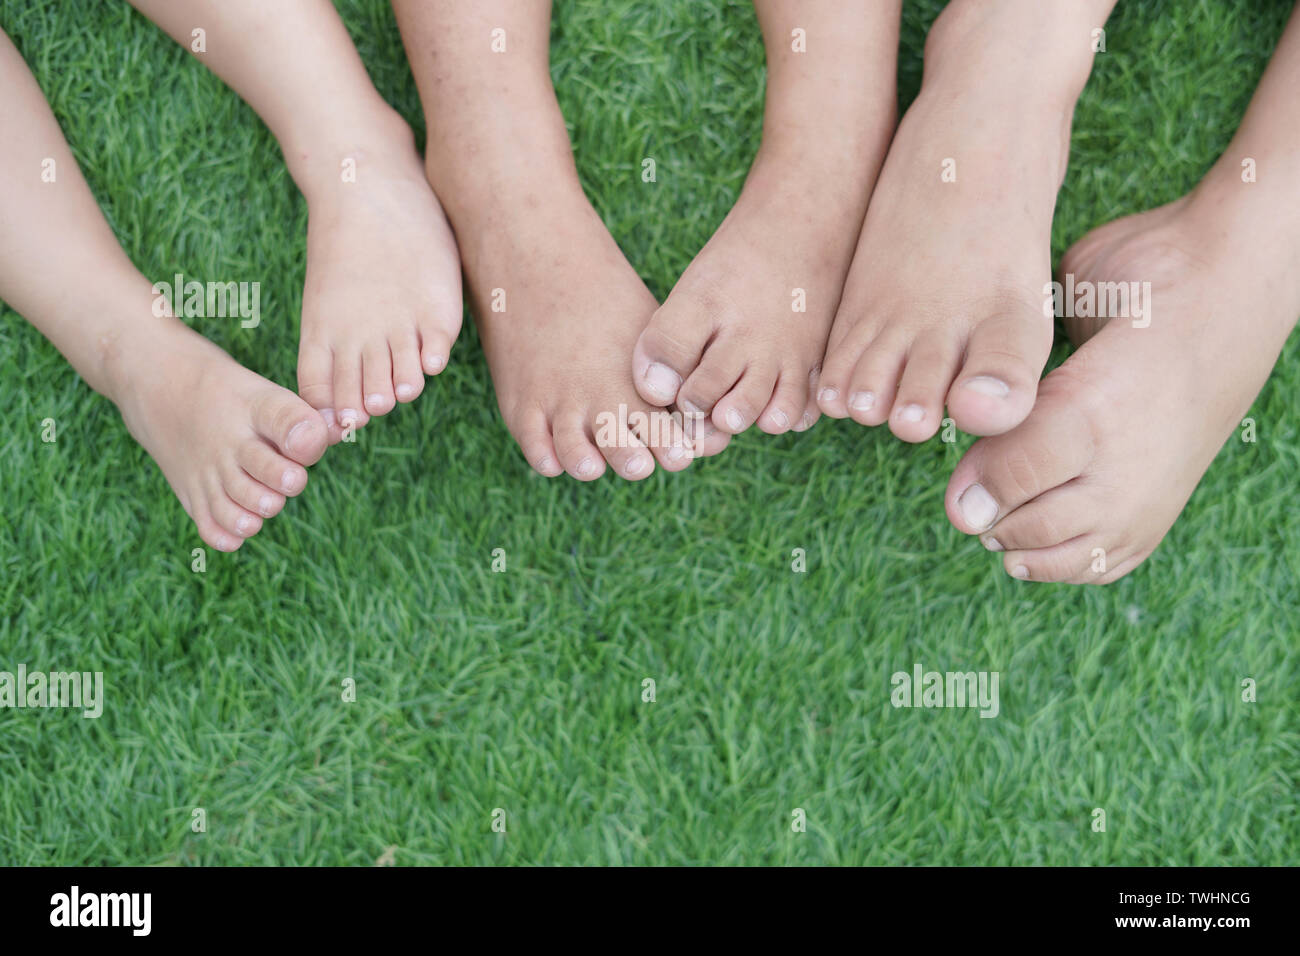 Family feet. Счастливые стопы. Ступни счастливой семьи. Ноги счастливых детей. Ноги счастье.